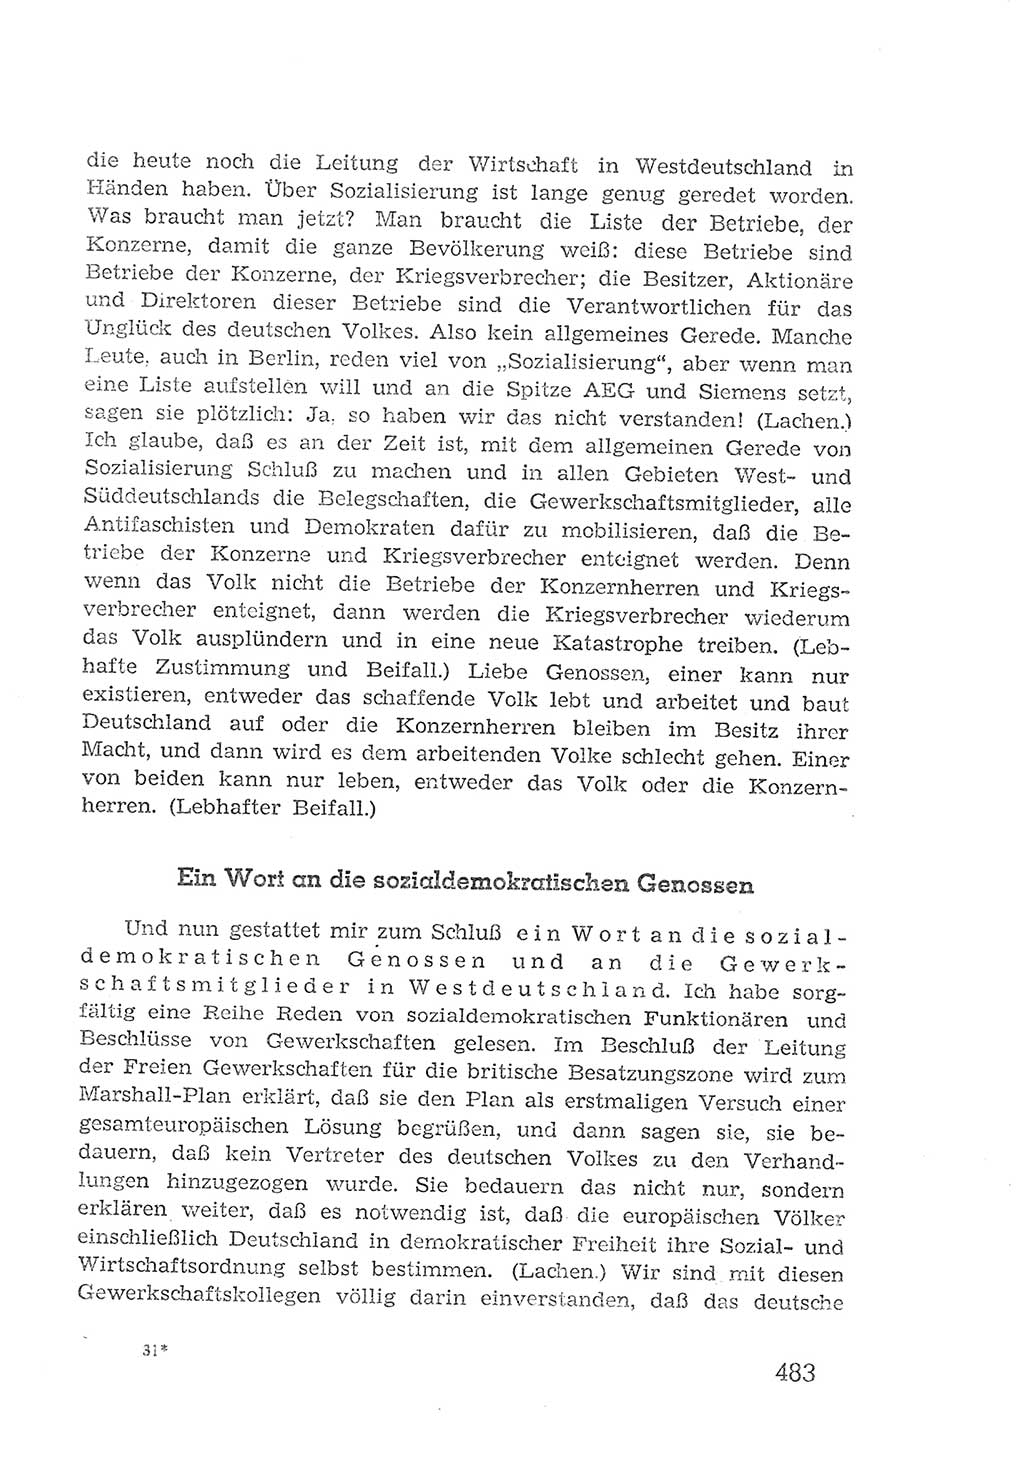 Protokoll der Verhandlungen des 2. Parteitages der Sozialistischen Einheitspartei Deutschlands (SED) [Sowjetische Besatzungszone (SBZ) Deutschlands] 1947, Seite 483 (Prot. Verh. 2. PT SED SBZ Dtl. 1947, S. 483)